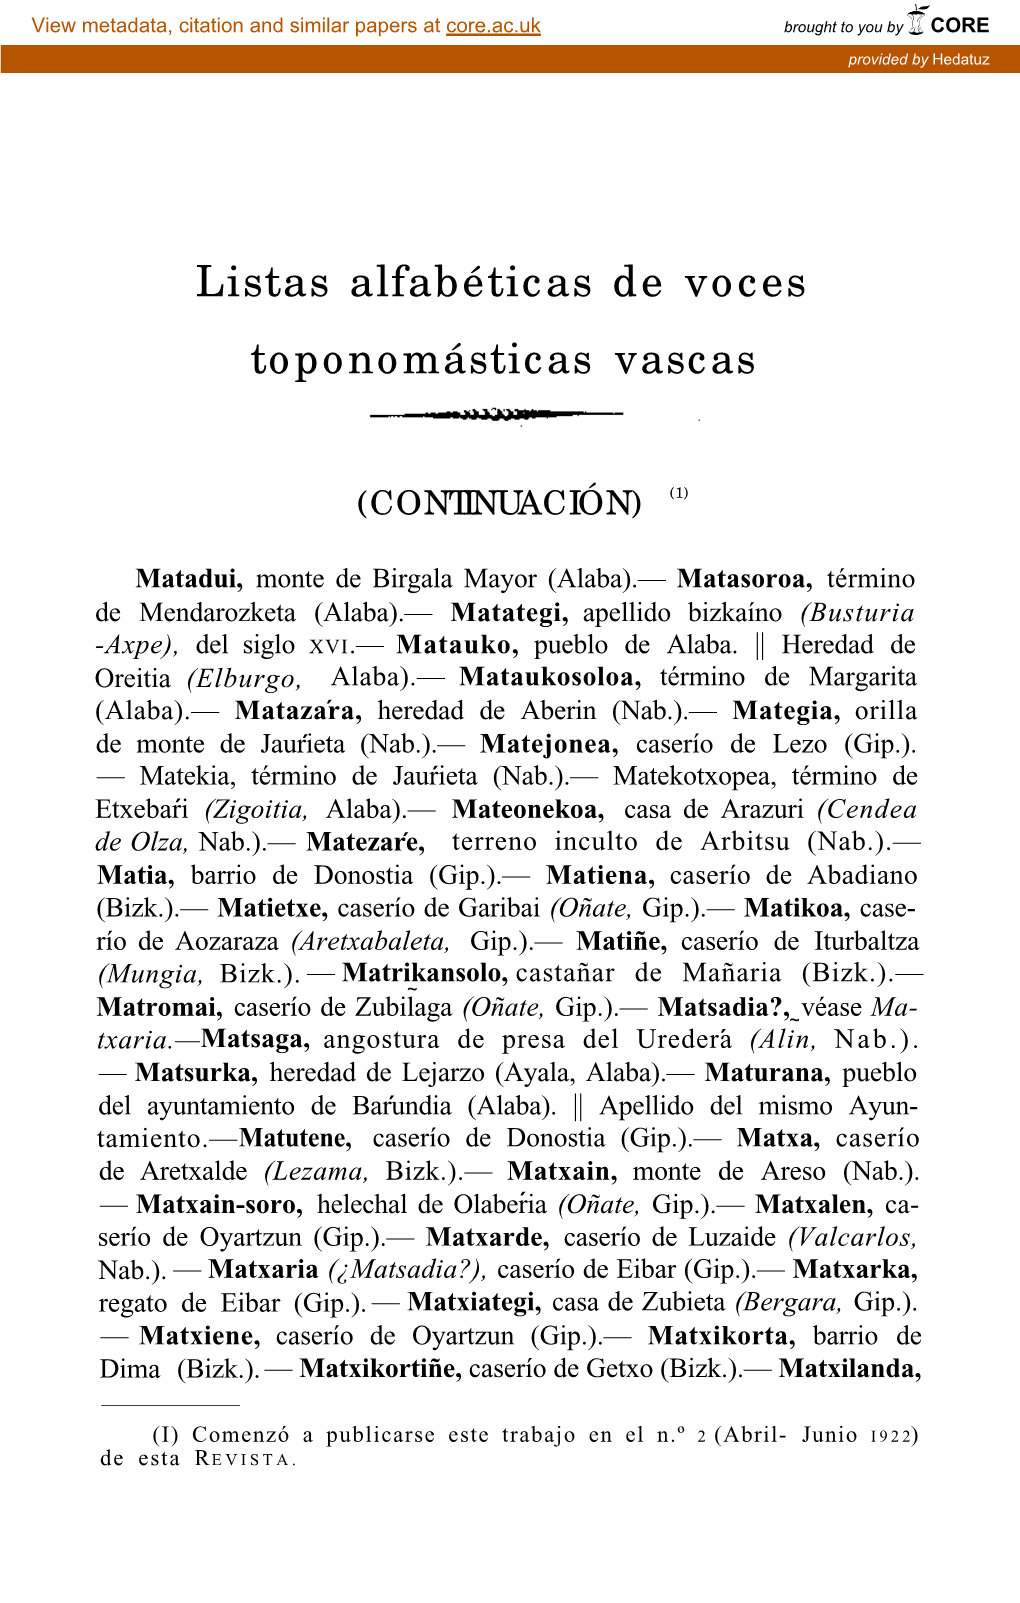 Listas Alfabéticas De Voces Toponomásticas Vascas